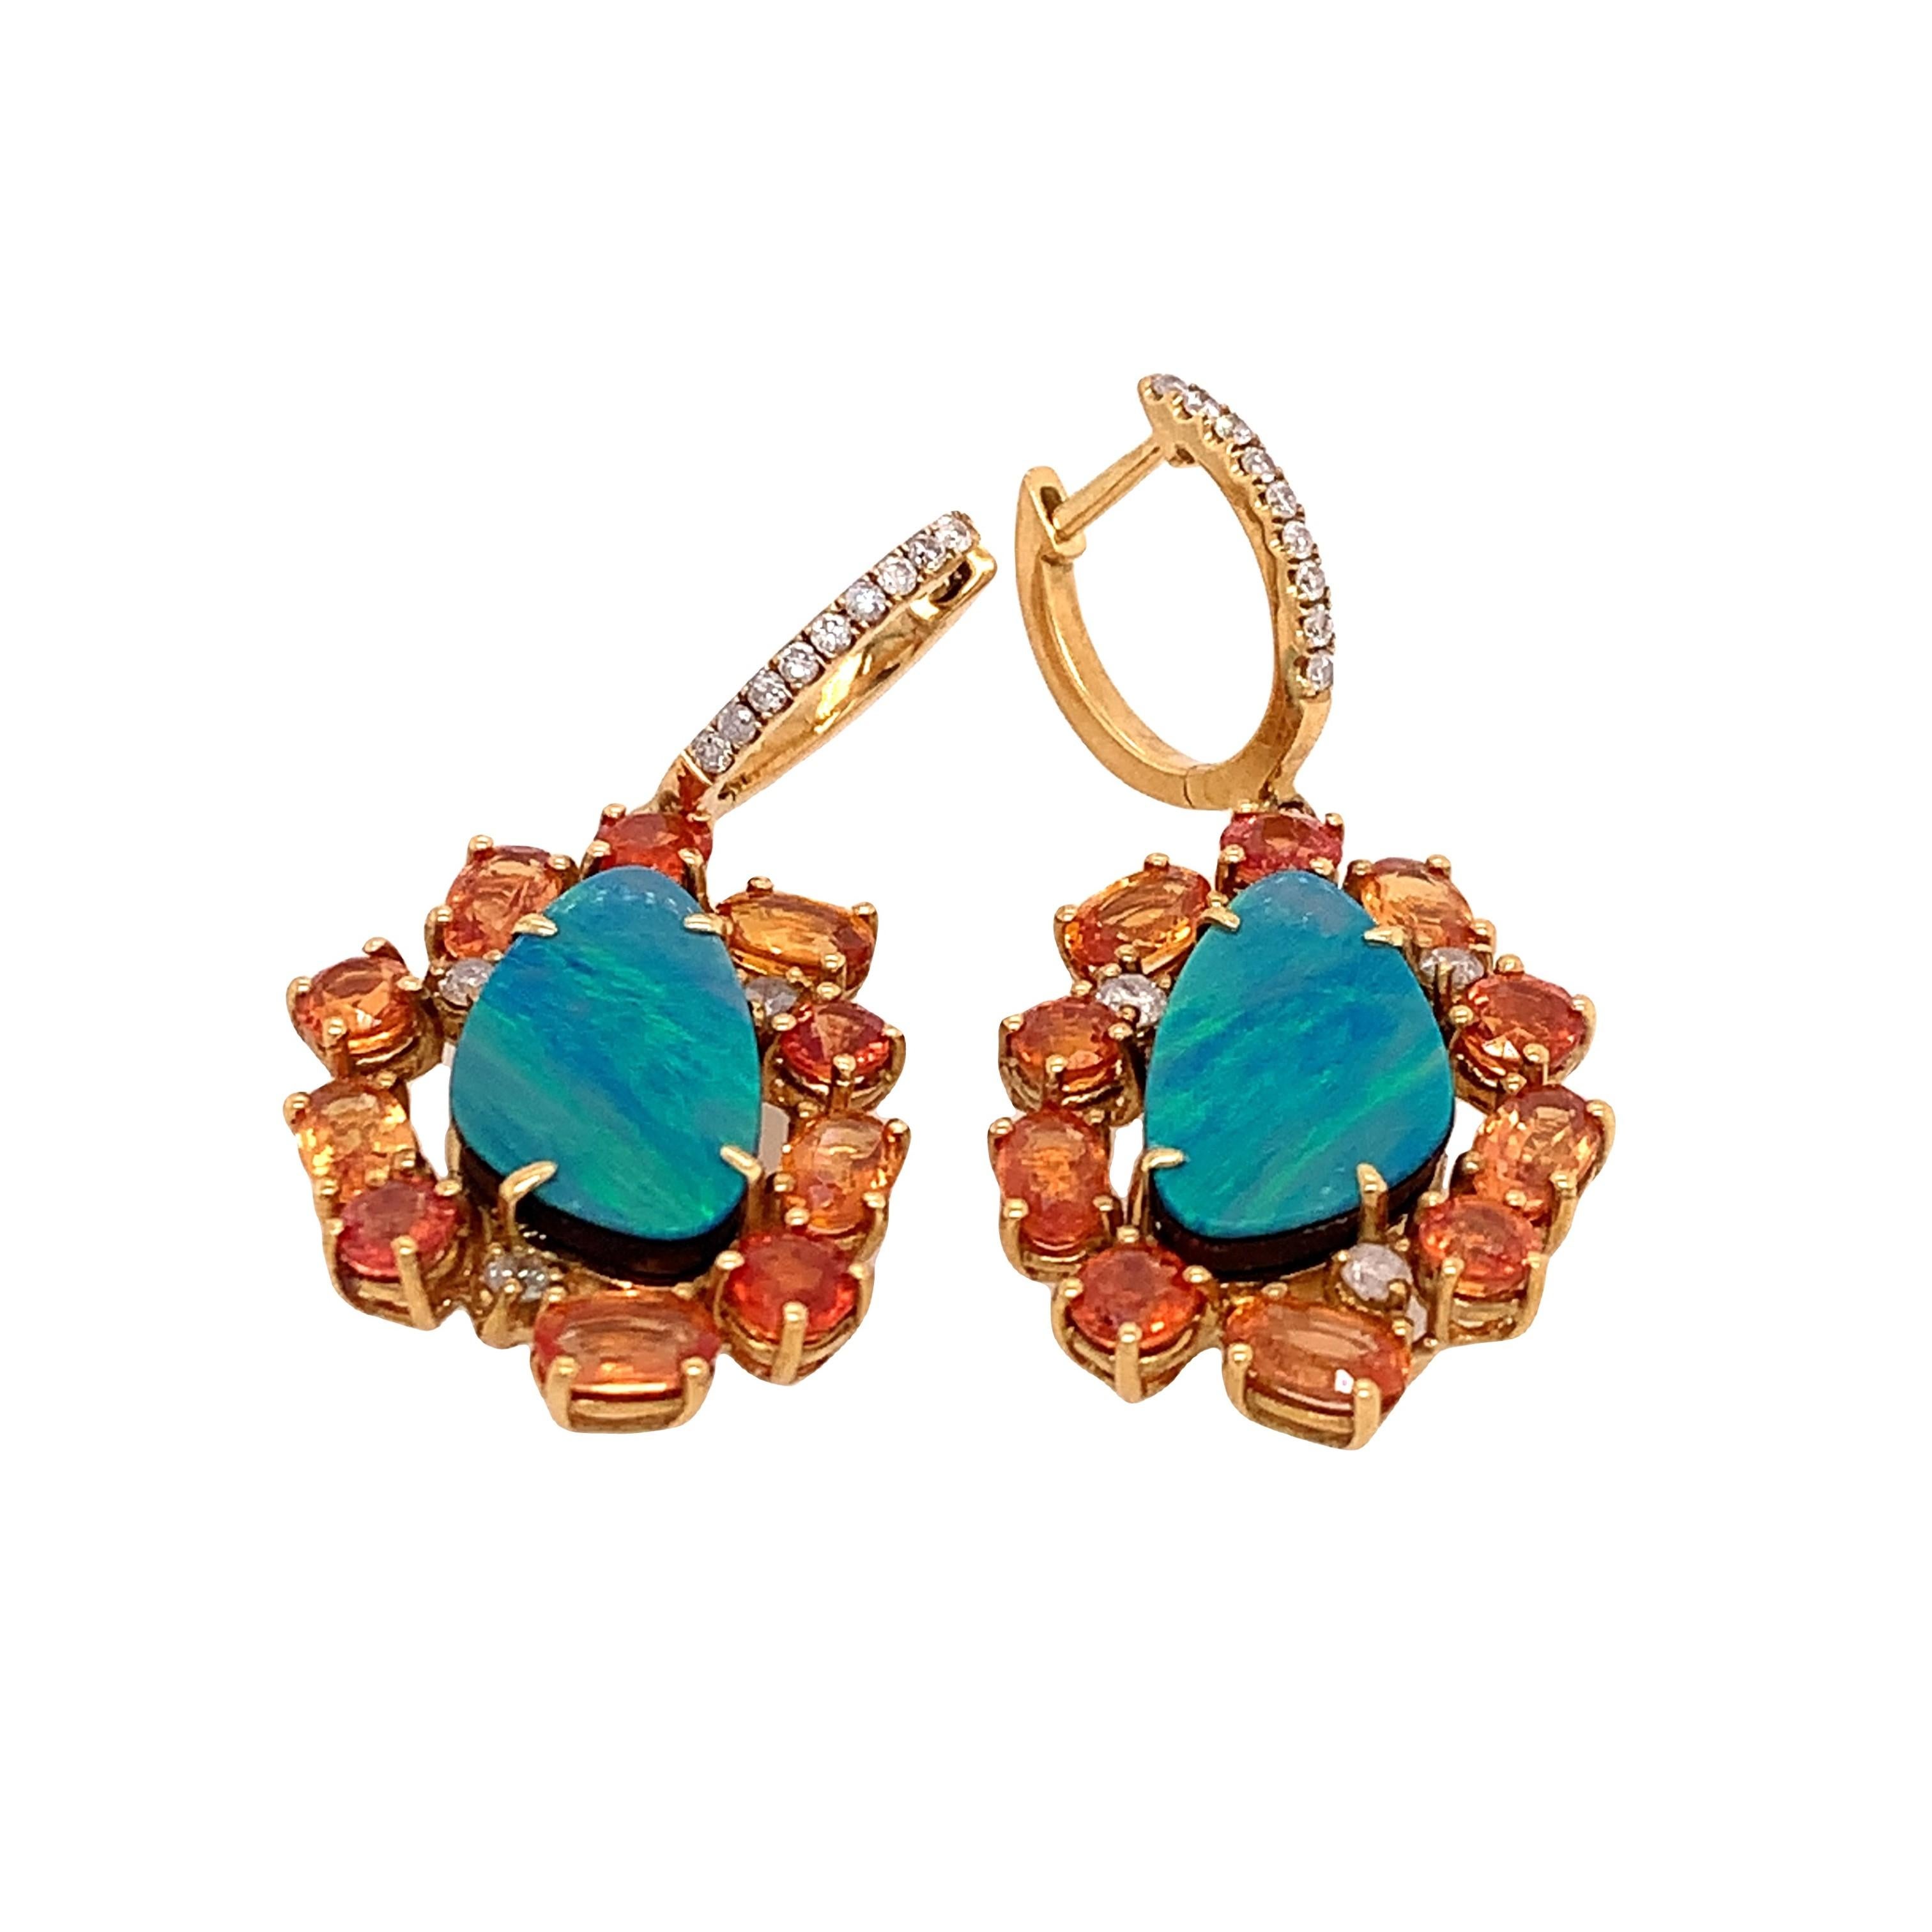 Lillipad Kollektion

Sie können die perfekte Farbkombination aus blauem Opal, orangefarbenen Saphiren und Diamanten in diesen Ohrringen sehen. Diese Ohrringe aus 18 Karat Gelbgold sind der perfekte Begleiter für den Sommer. 

Opal: 4,93ct